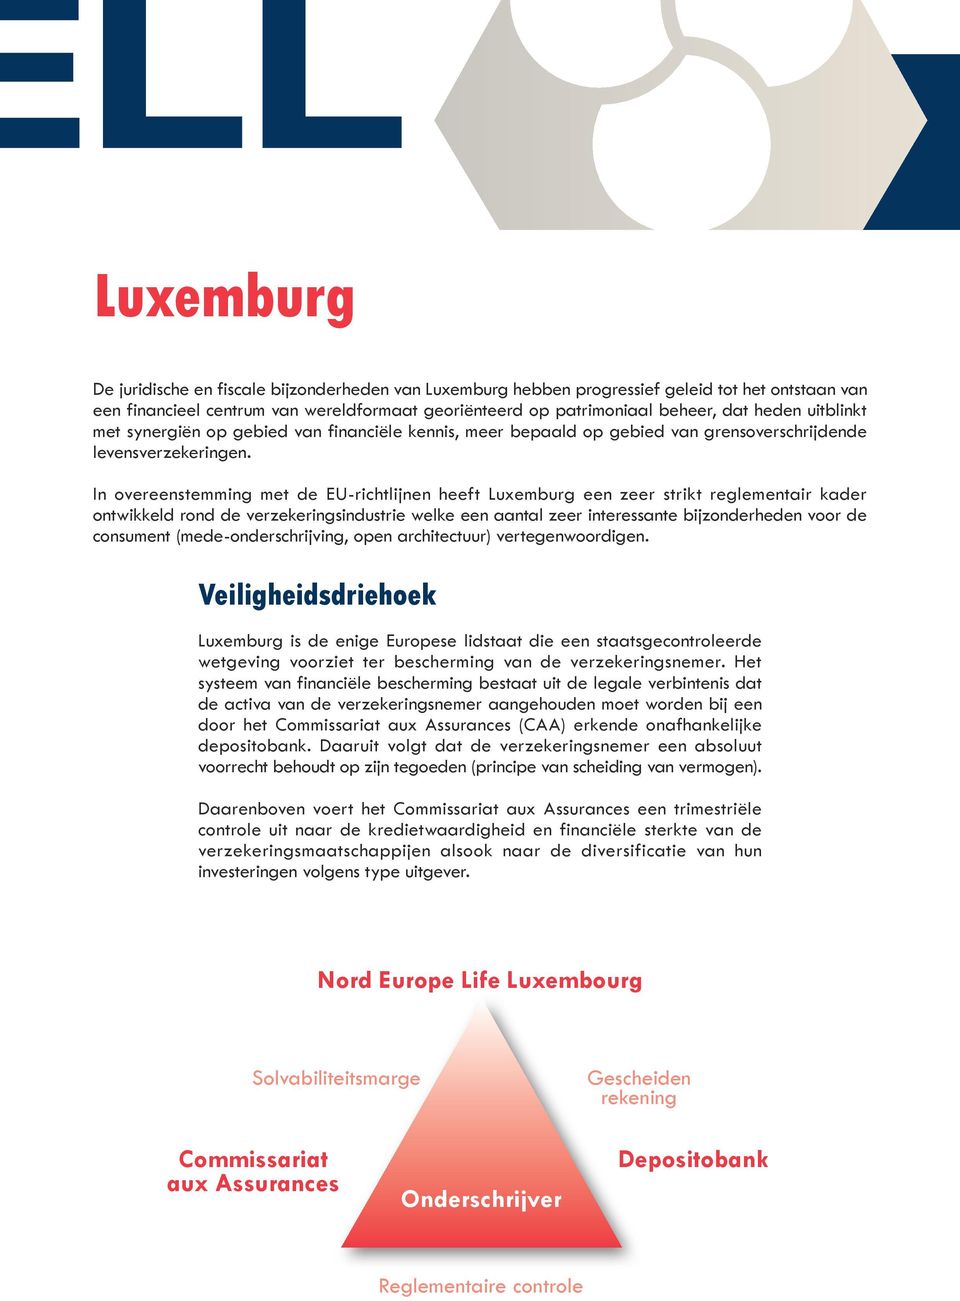 In overeenstemming met de EU-richtlijnen heeft Luxemburg een zeer strikt reglementair kader ontwikkeld rond de verzekeringsindustrie welke een aantal zeer interessante bijzonderheden voor de